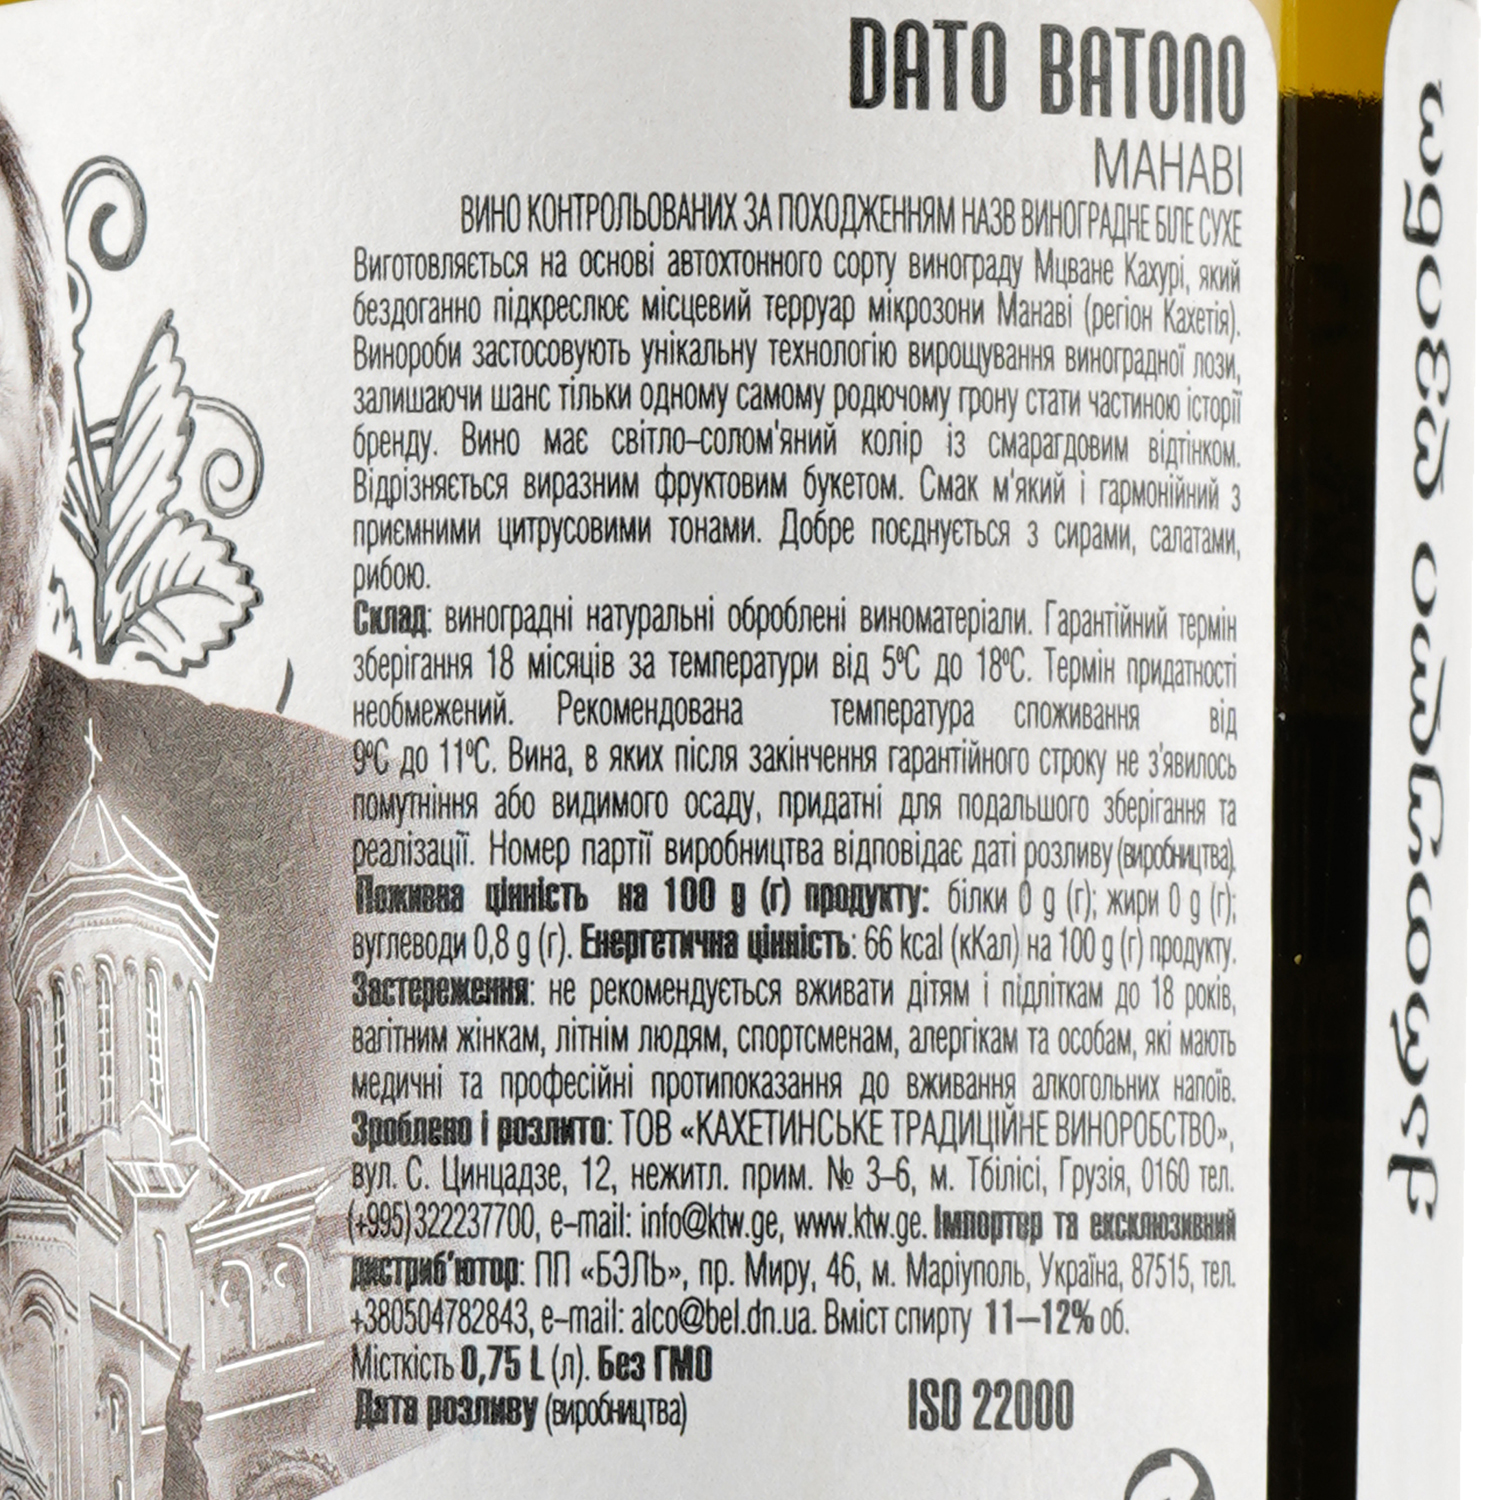 Вино Dato Batono Manavi, белое, сухое, 11-12%, 0,75 л (854152) - фото 3